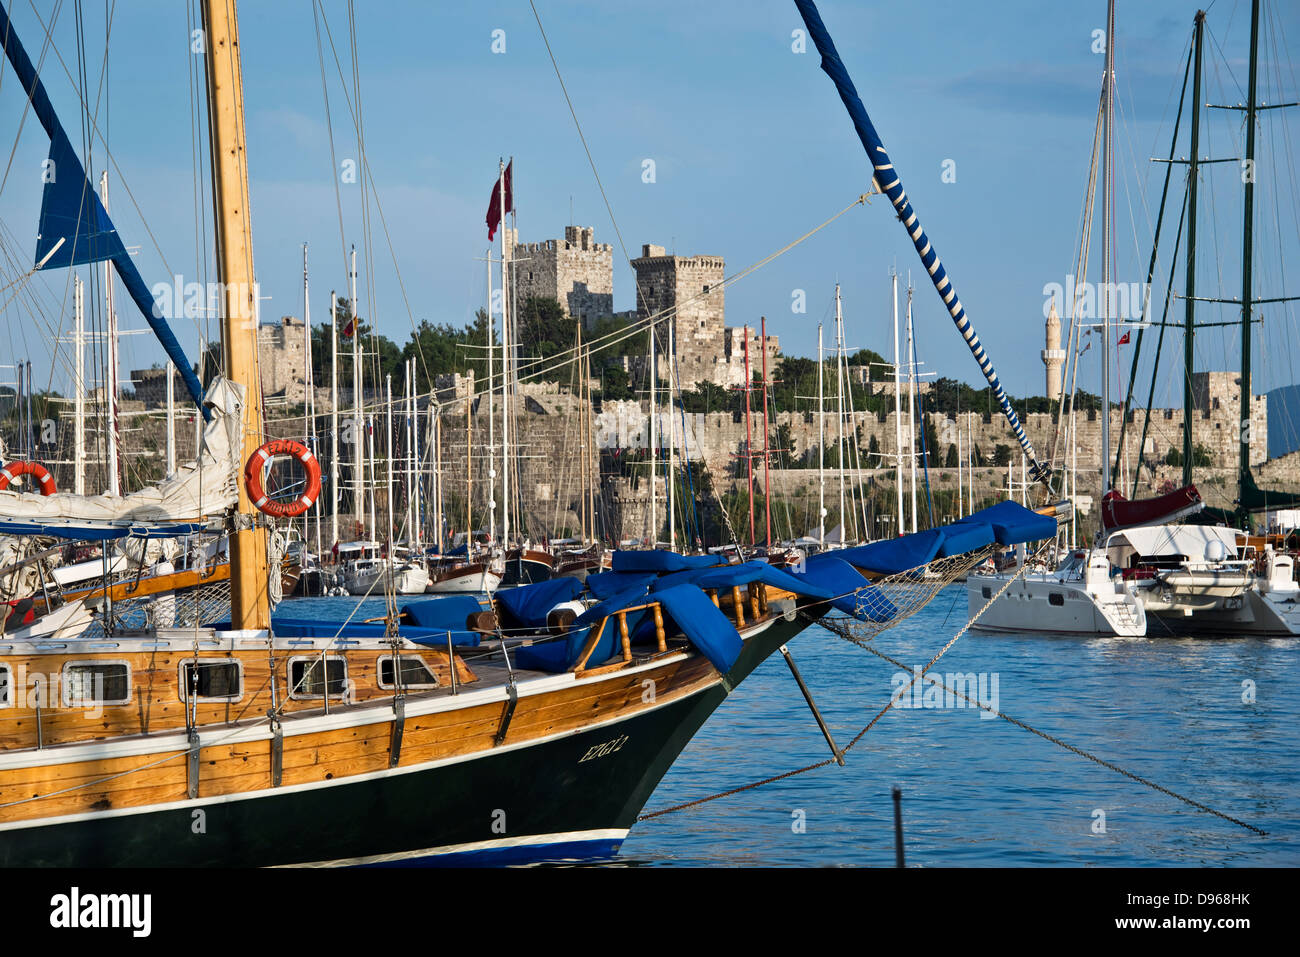 Imbarcazione a vela nel porto di Bodrum, il castello di San Pietro in background, Turchia Foto Stock